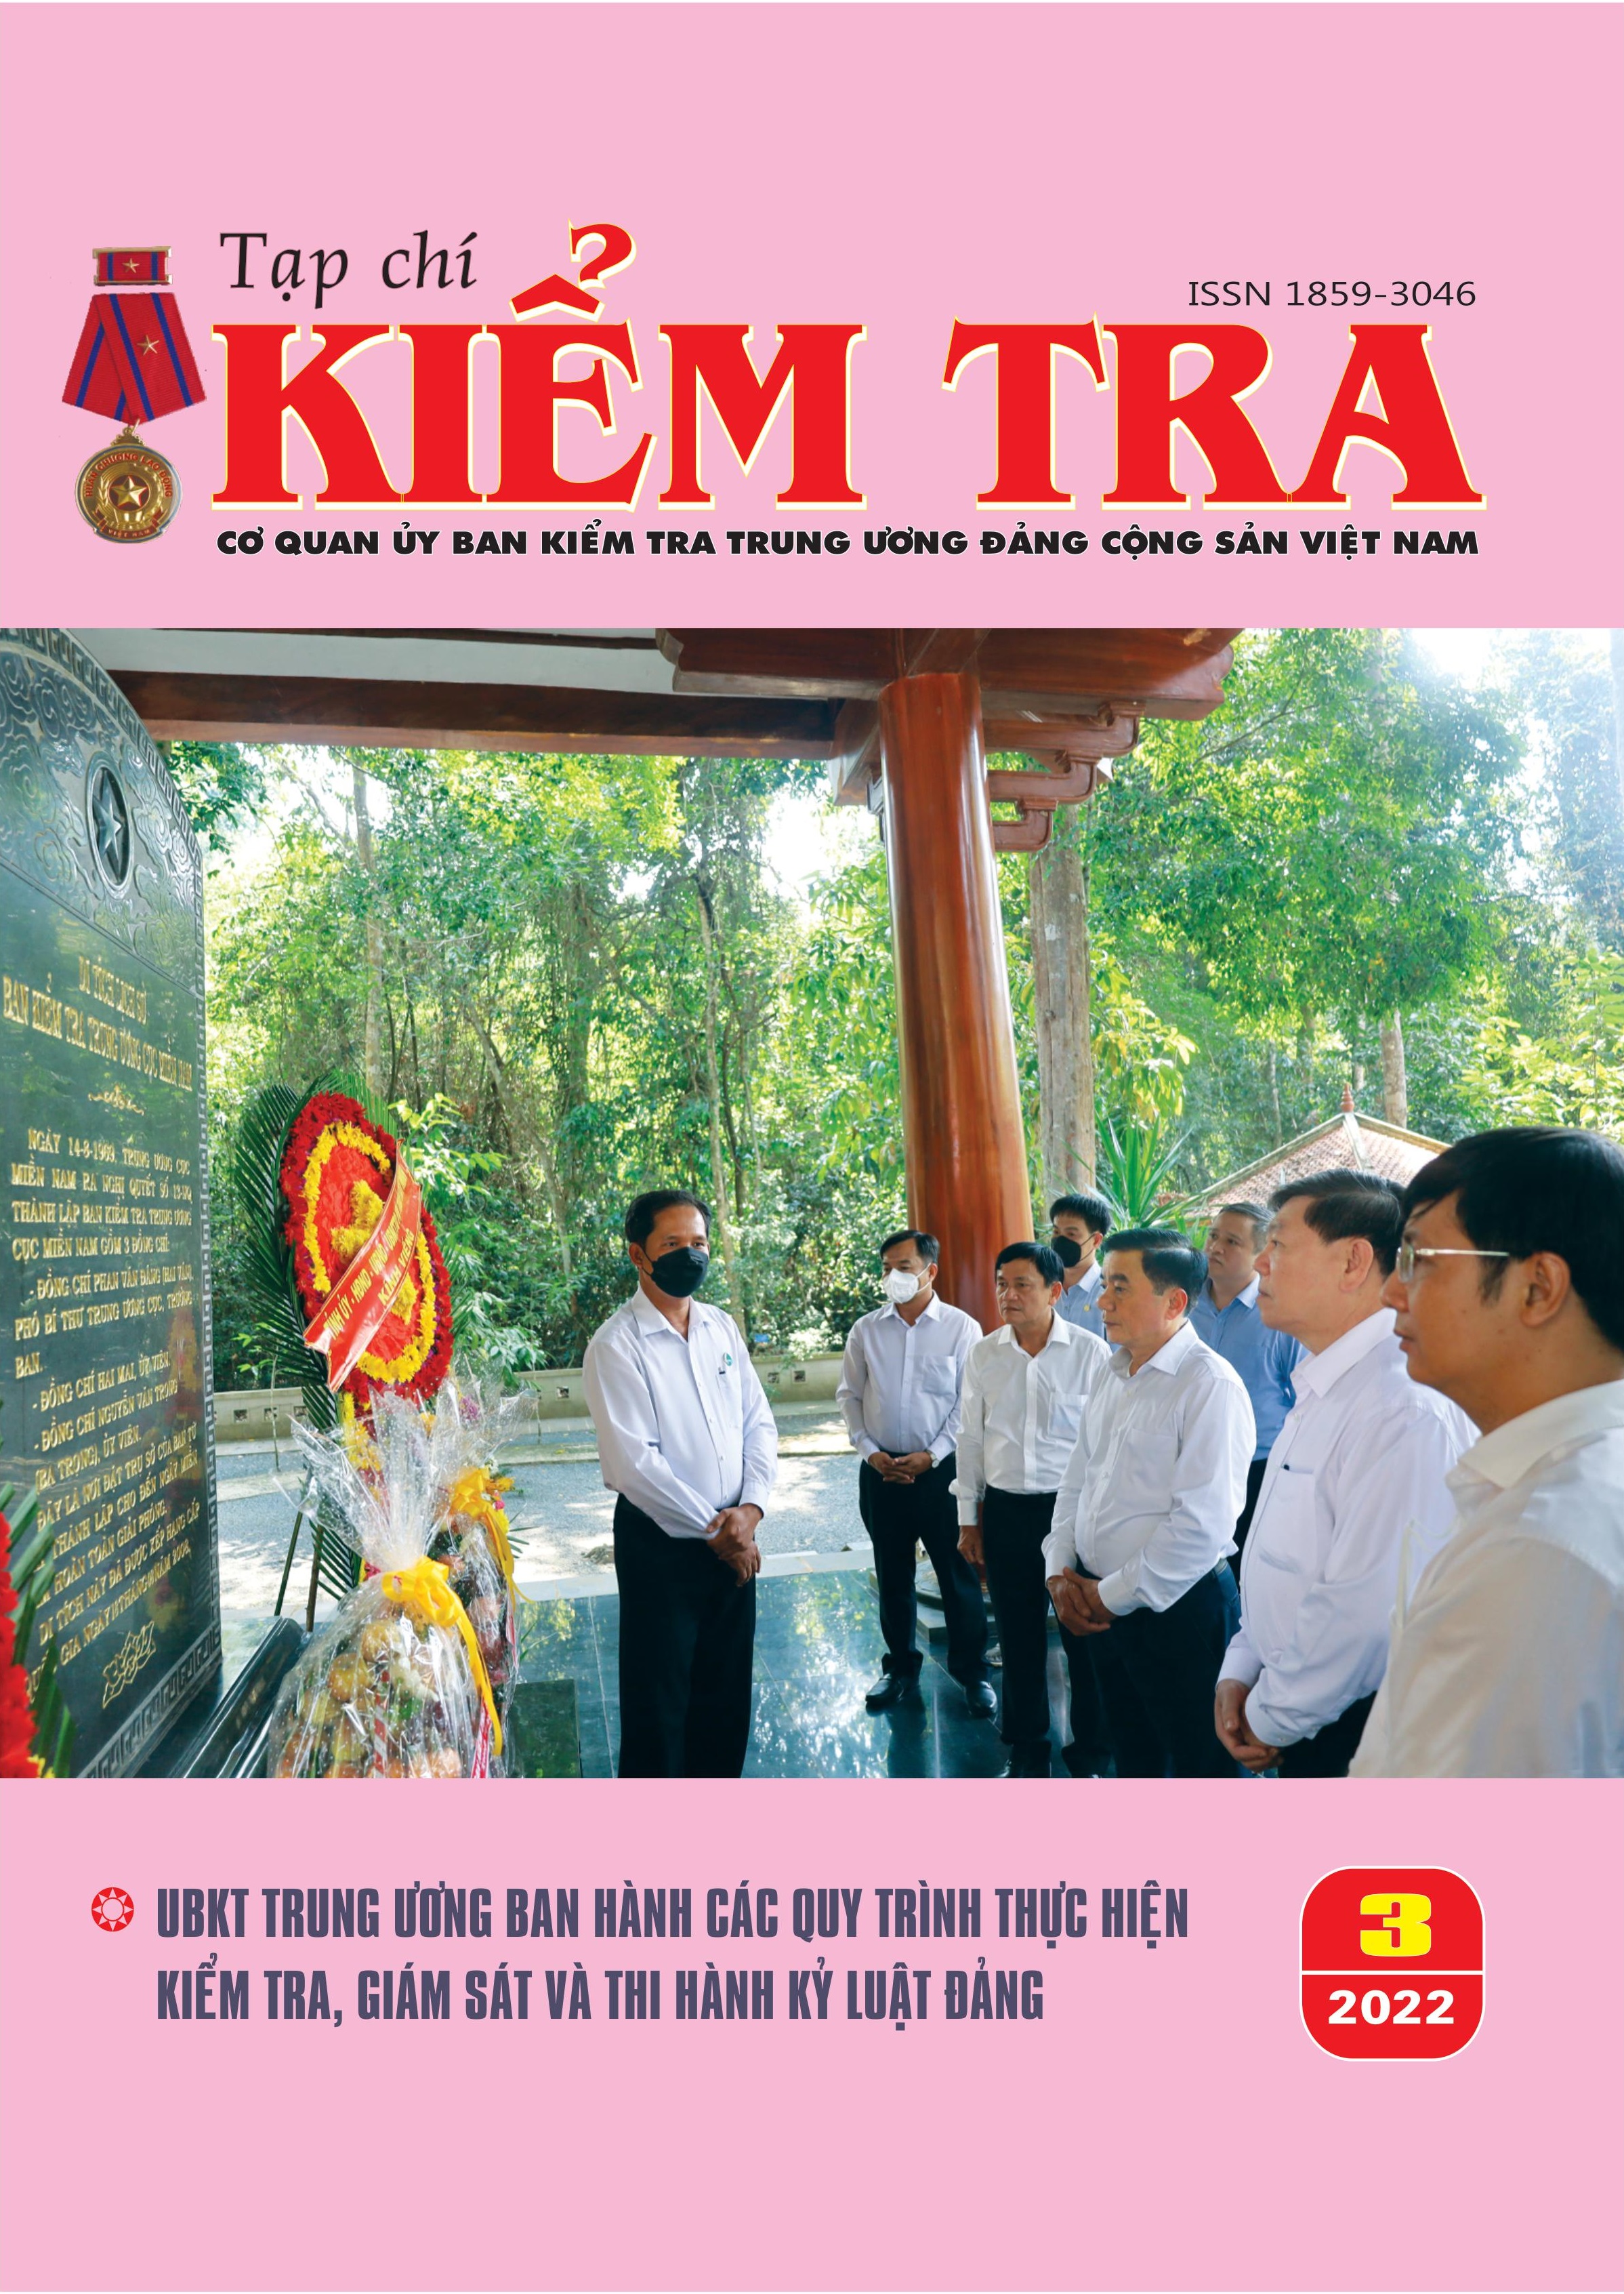 Tạp chí kiểm tra phục vụ nhu cầu đọc hiểu của người Việt, cập nhật thông tin mới nhất về kinh tế, xã hội, văn hóa, giải trí và thế giới. Đội ngũ biên tập chuyên nghiệp, trình bày mạch lạc, dễ hiểu, giúp độc giả luôn cập nhật kiến thức, mở rộng tầm nhìn.